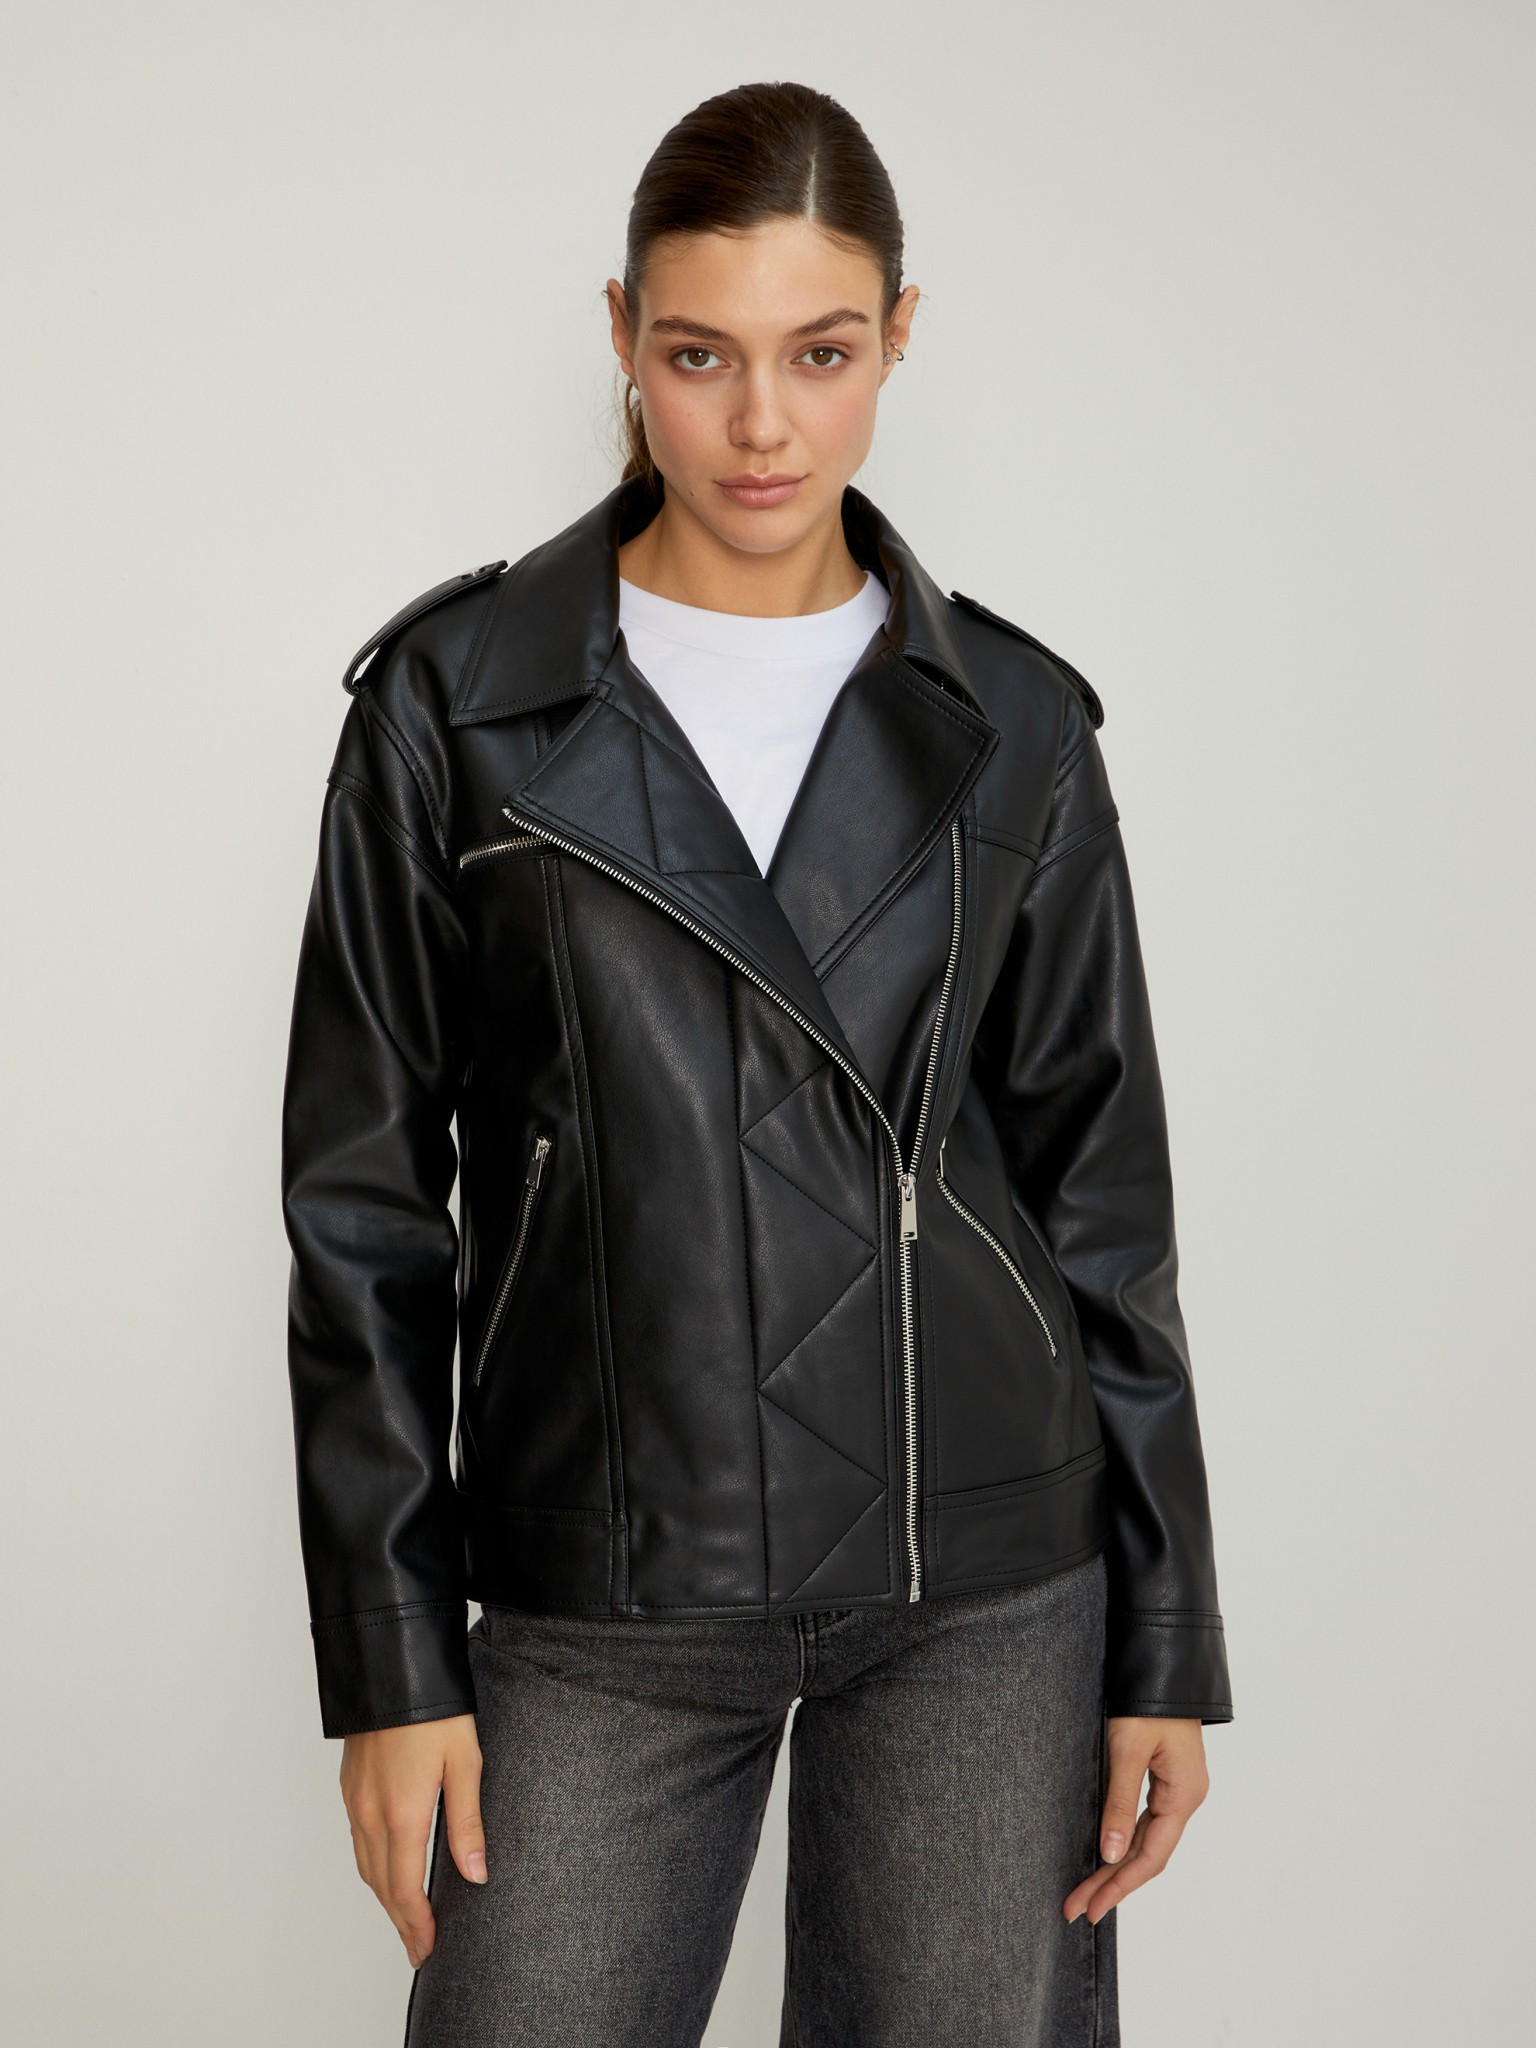 Кожаная куртка женская Concept Club 10200430006 черная M